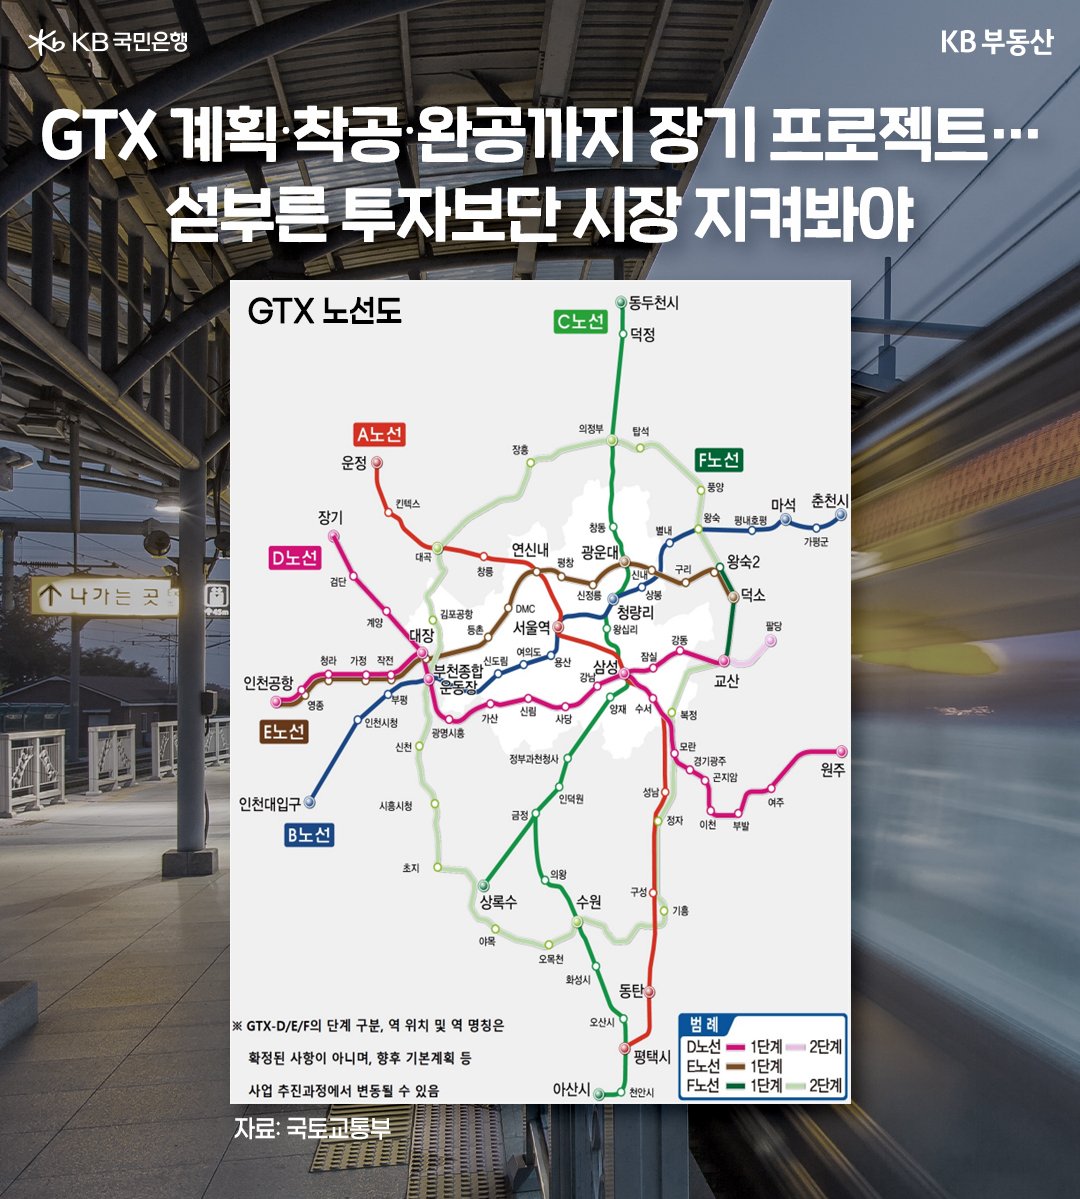 ' GTX 노선도'가 그려진 이미지. 섣부른 투자보단 시장 지켜봐야한다고 기재되어있다. '장기 프로젝트'이다.